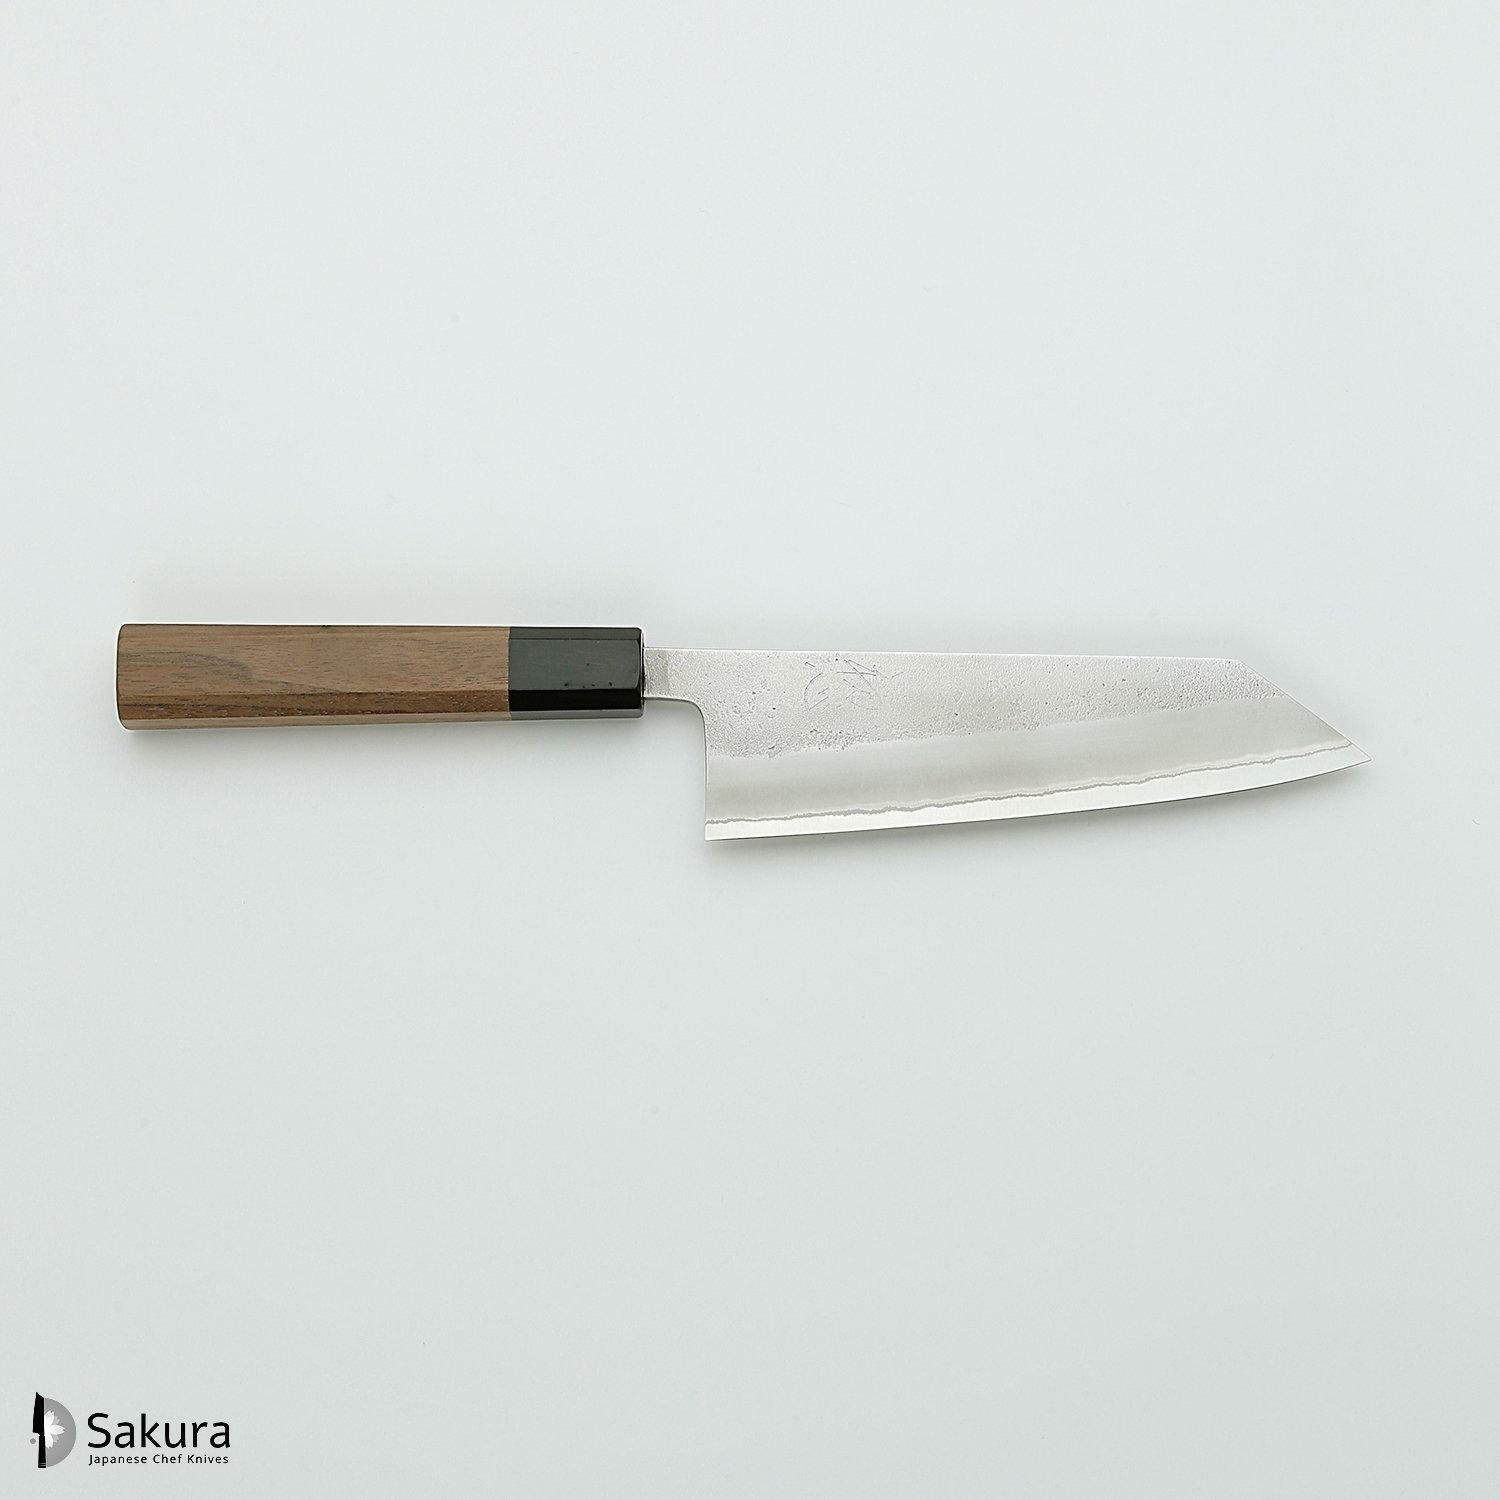 סכין רב-תכליתית בּוּנְקָה 165מ״מ מחושלת בעבודת יד 3 שכבות: פלדת פחמן יפנית מתקדמת מסוג Shirogami #2 עטופה פלדת אל-חלד גימור מט חיספוס טבעי יושיקאנה יפן